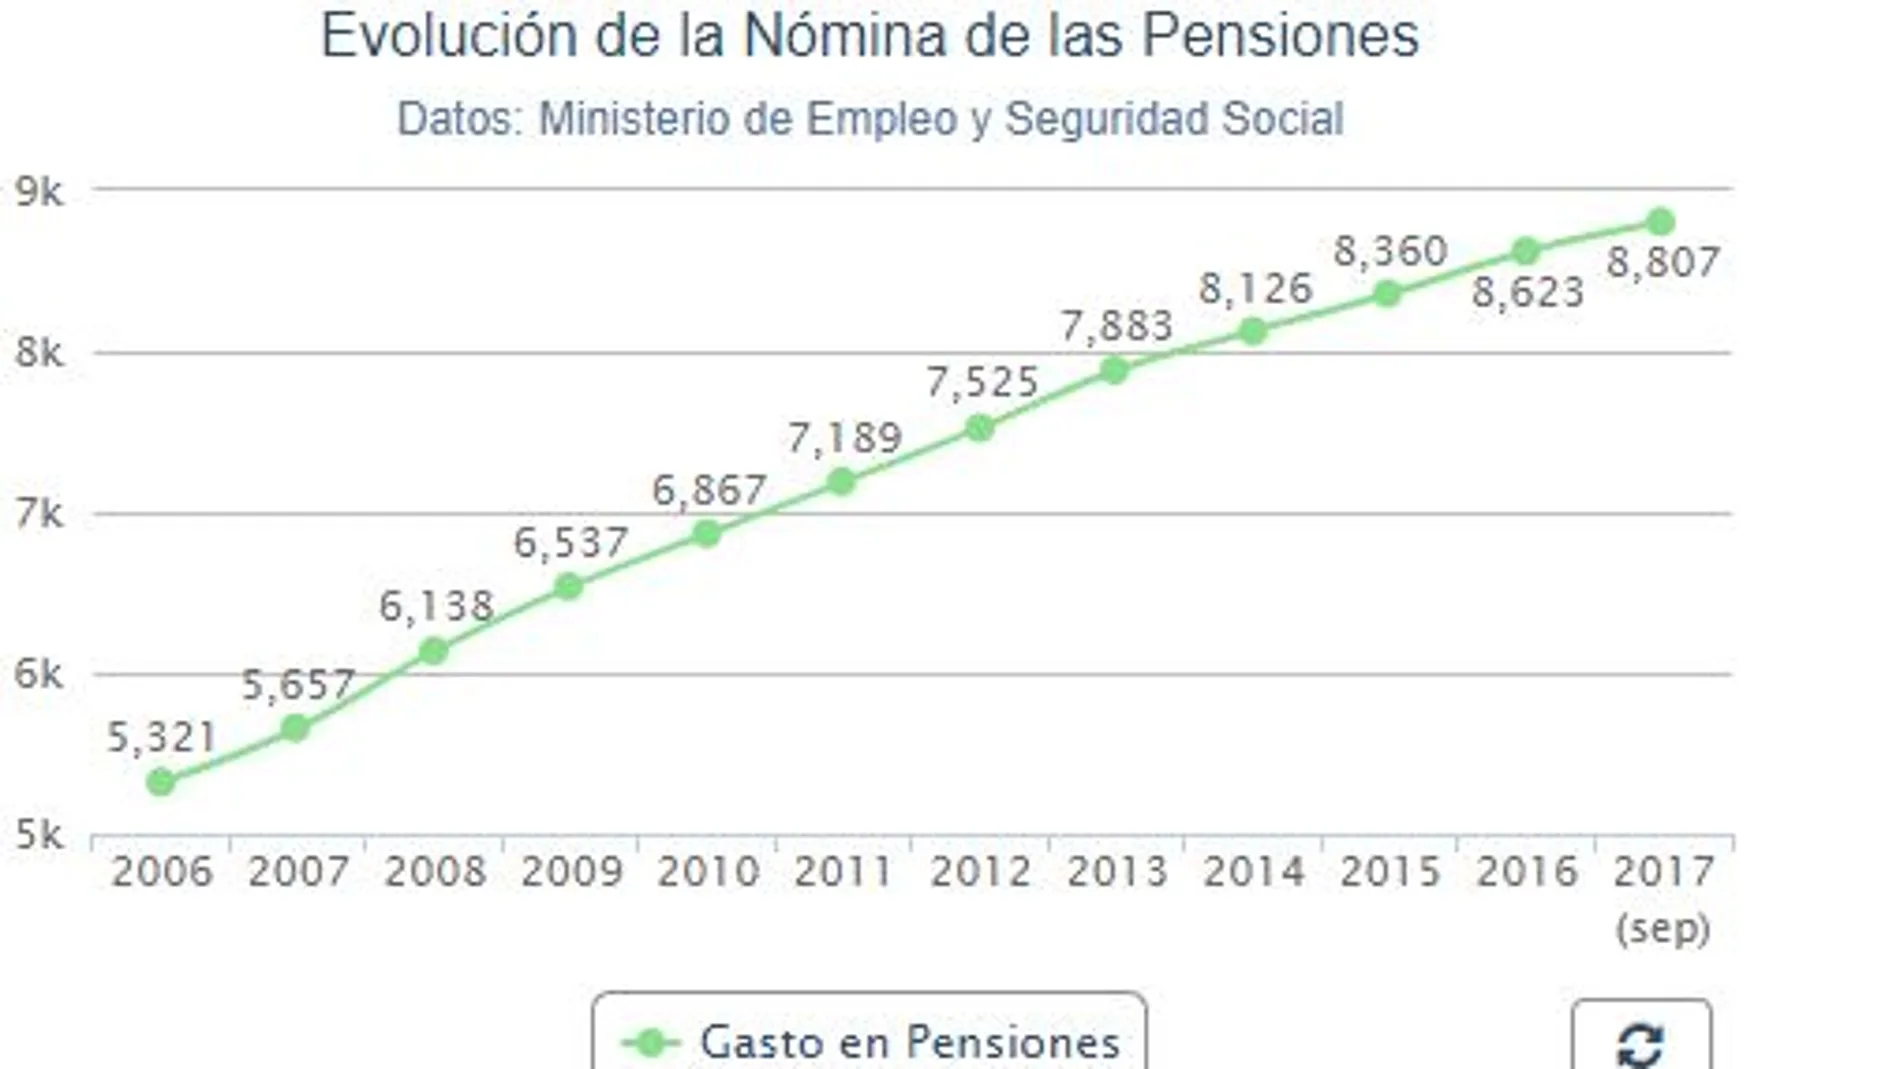 El gasto en pensiones crece un 3% en septiembre, hasta la cifra récord de 8.807 millones